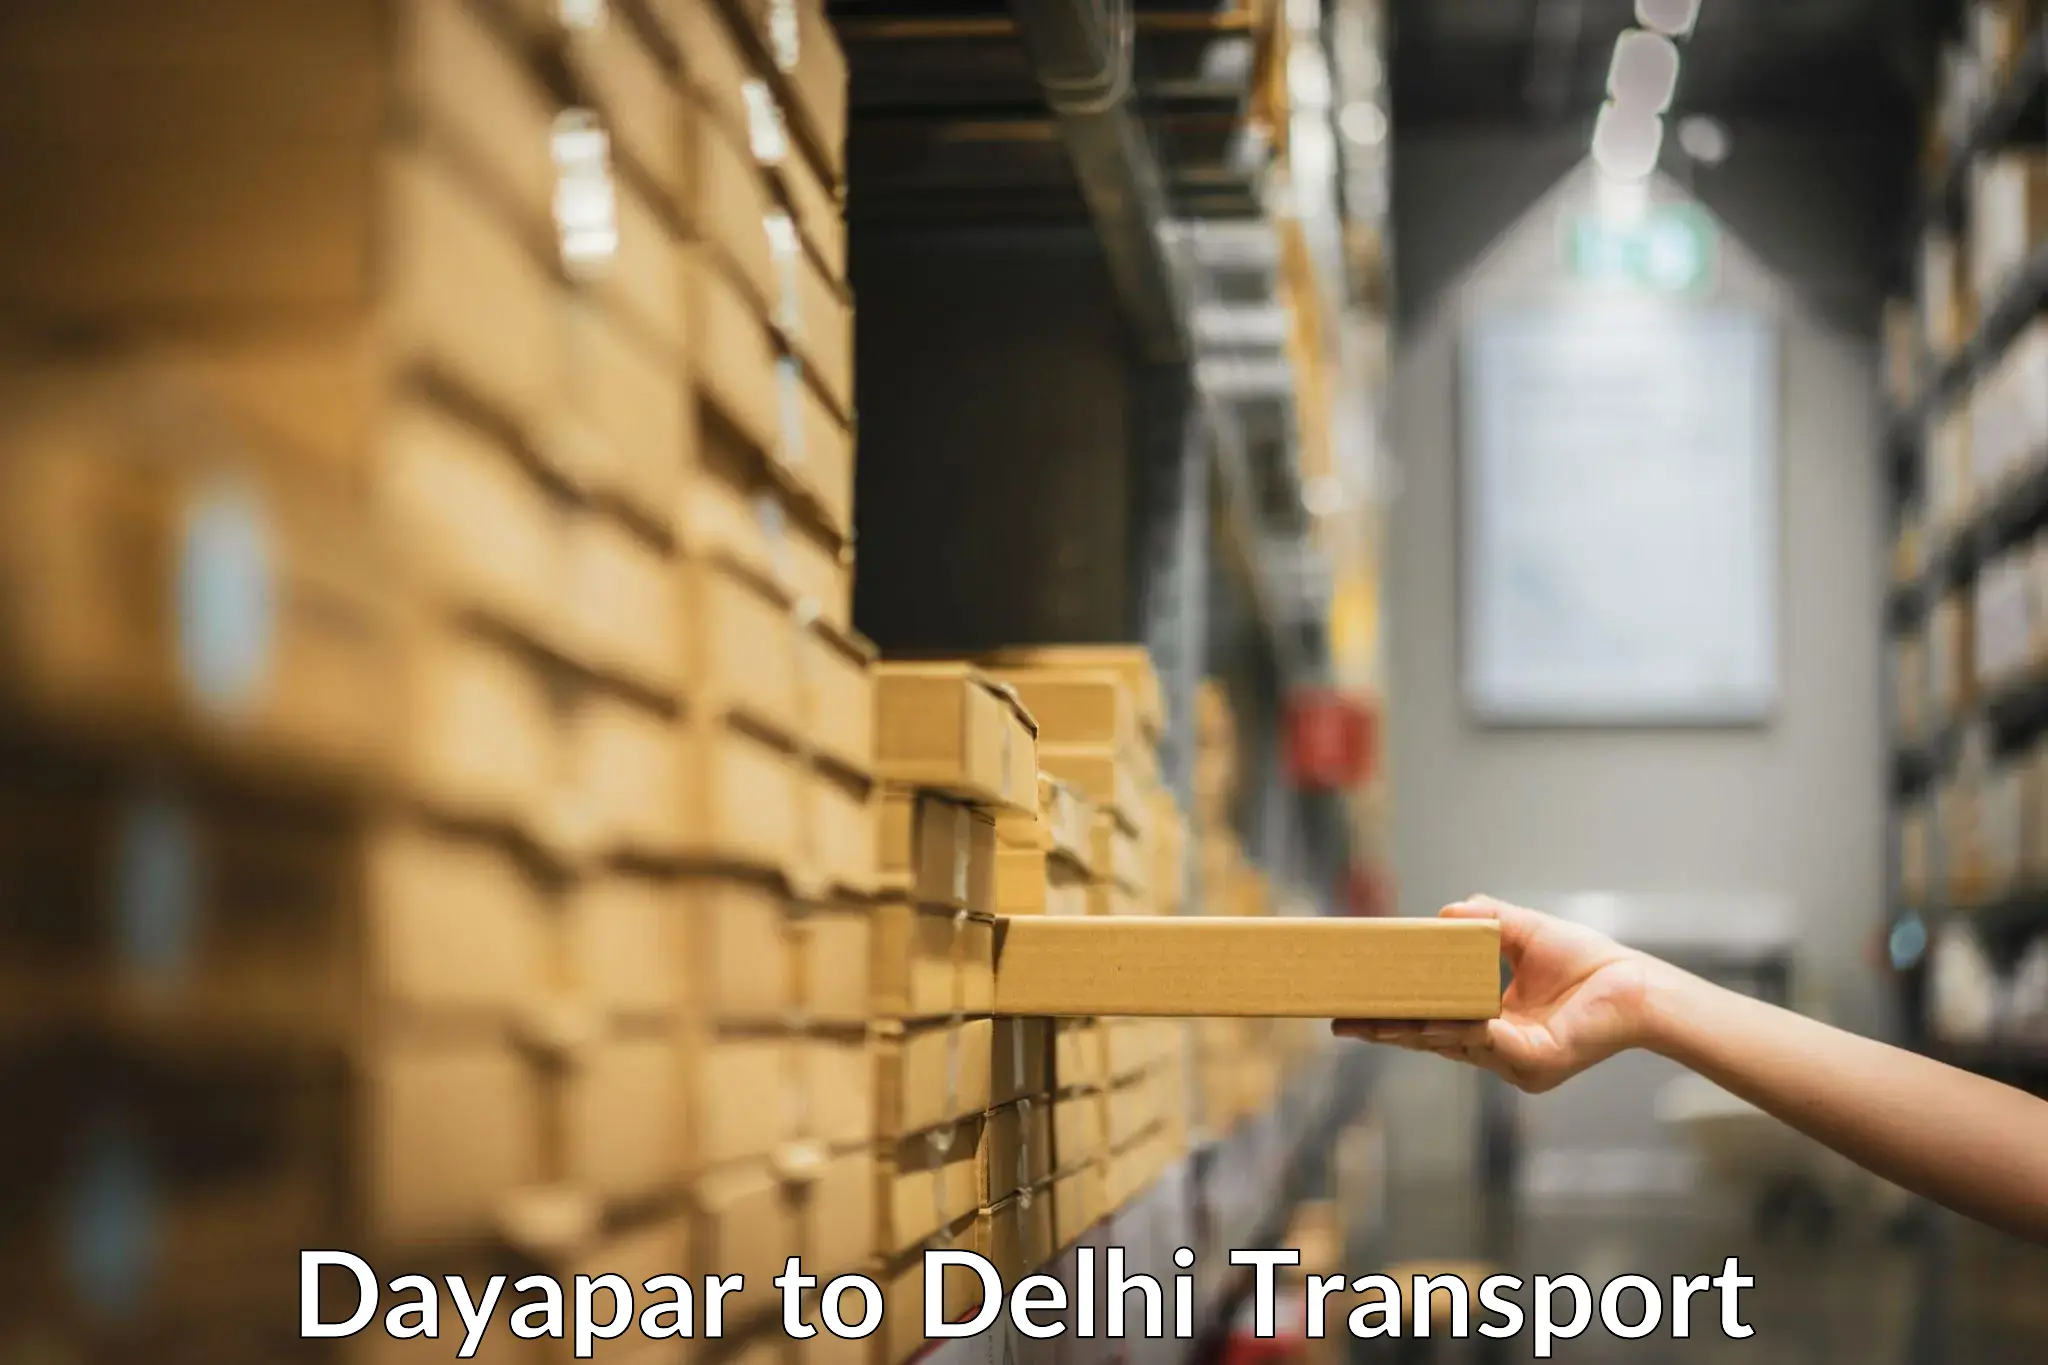 Daily parcel service transport Dayapar to Subhash Nagar